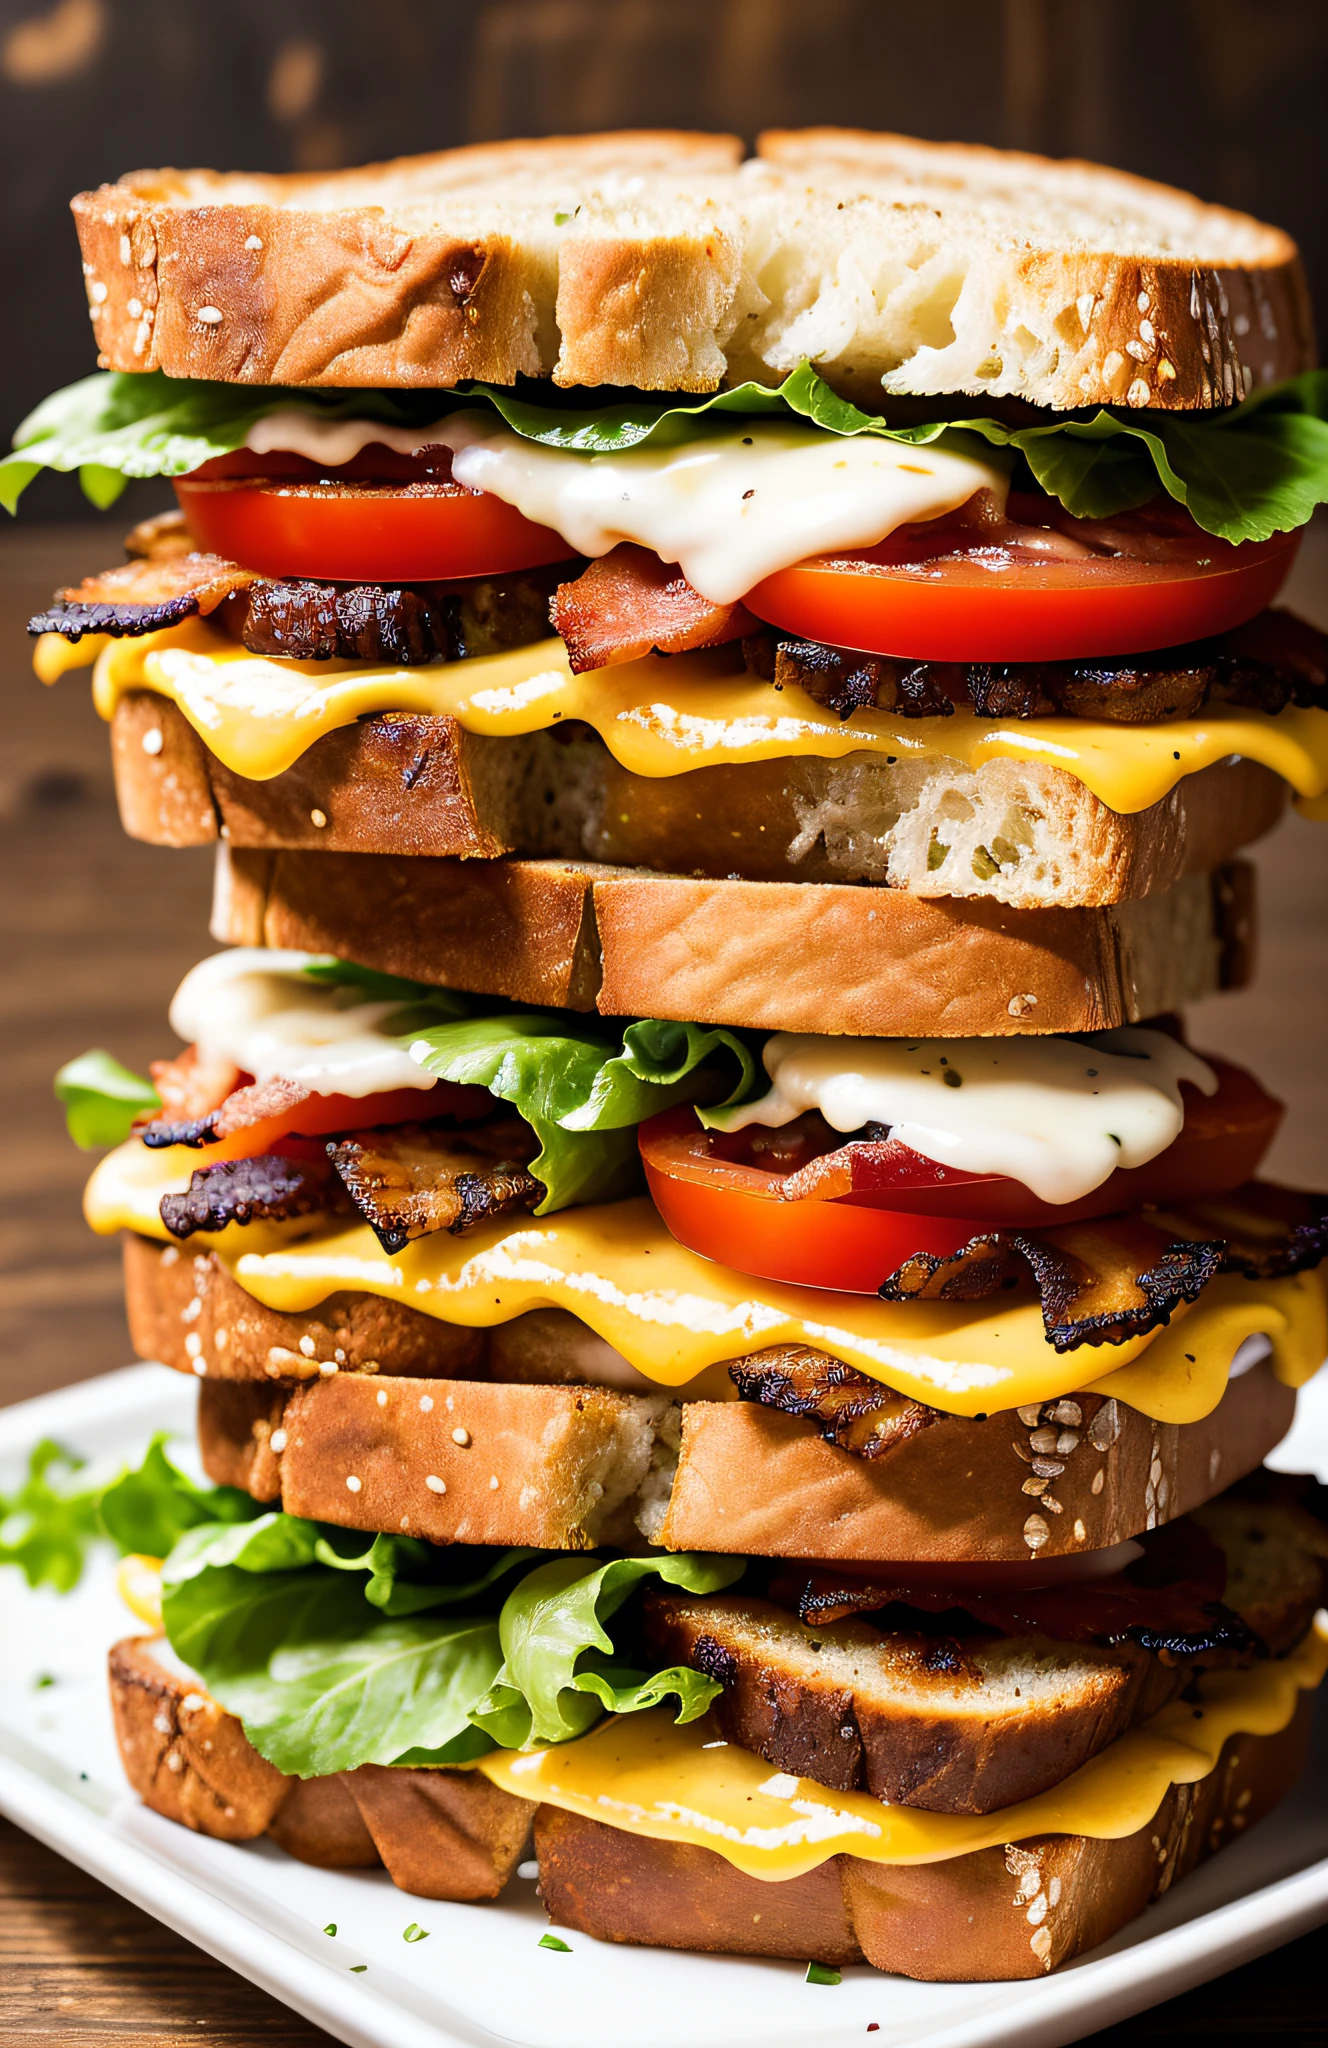 фотография восхитительного сэндвича BLT с дополнительным беконом, (деревенский фон закусочной)+, семенной хлеб, сыр перец джек, (сложные детали:1.12), HDR, (сложные детали, гипердетализированный:1.15)